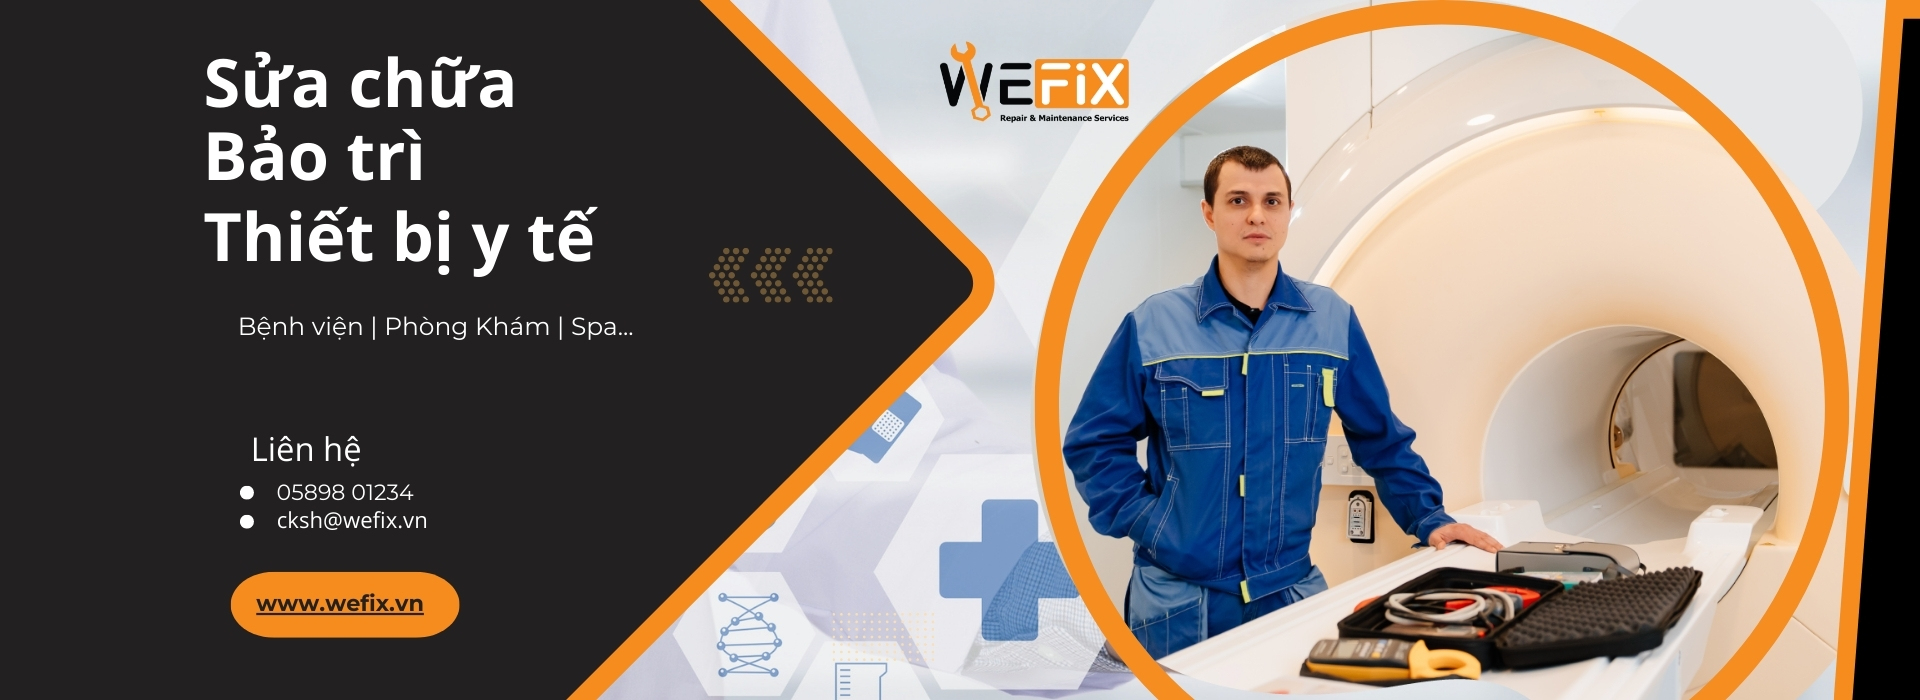 Dịch vụ sửa chữa bảo trì Wefix